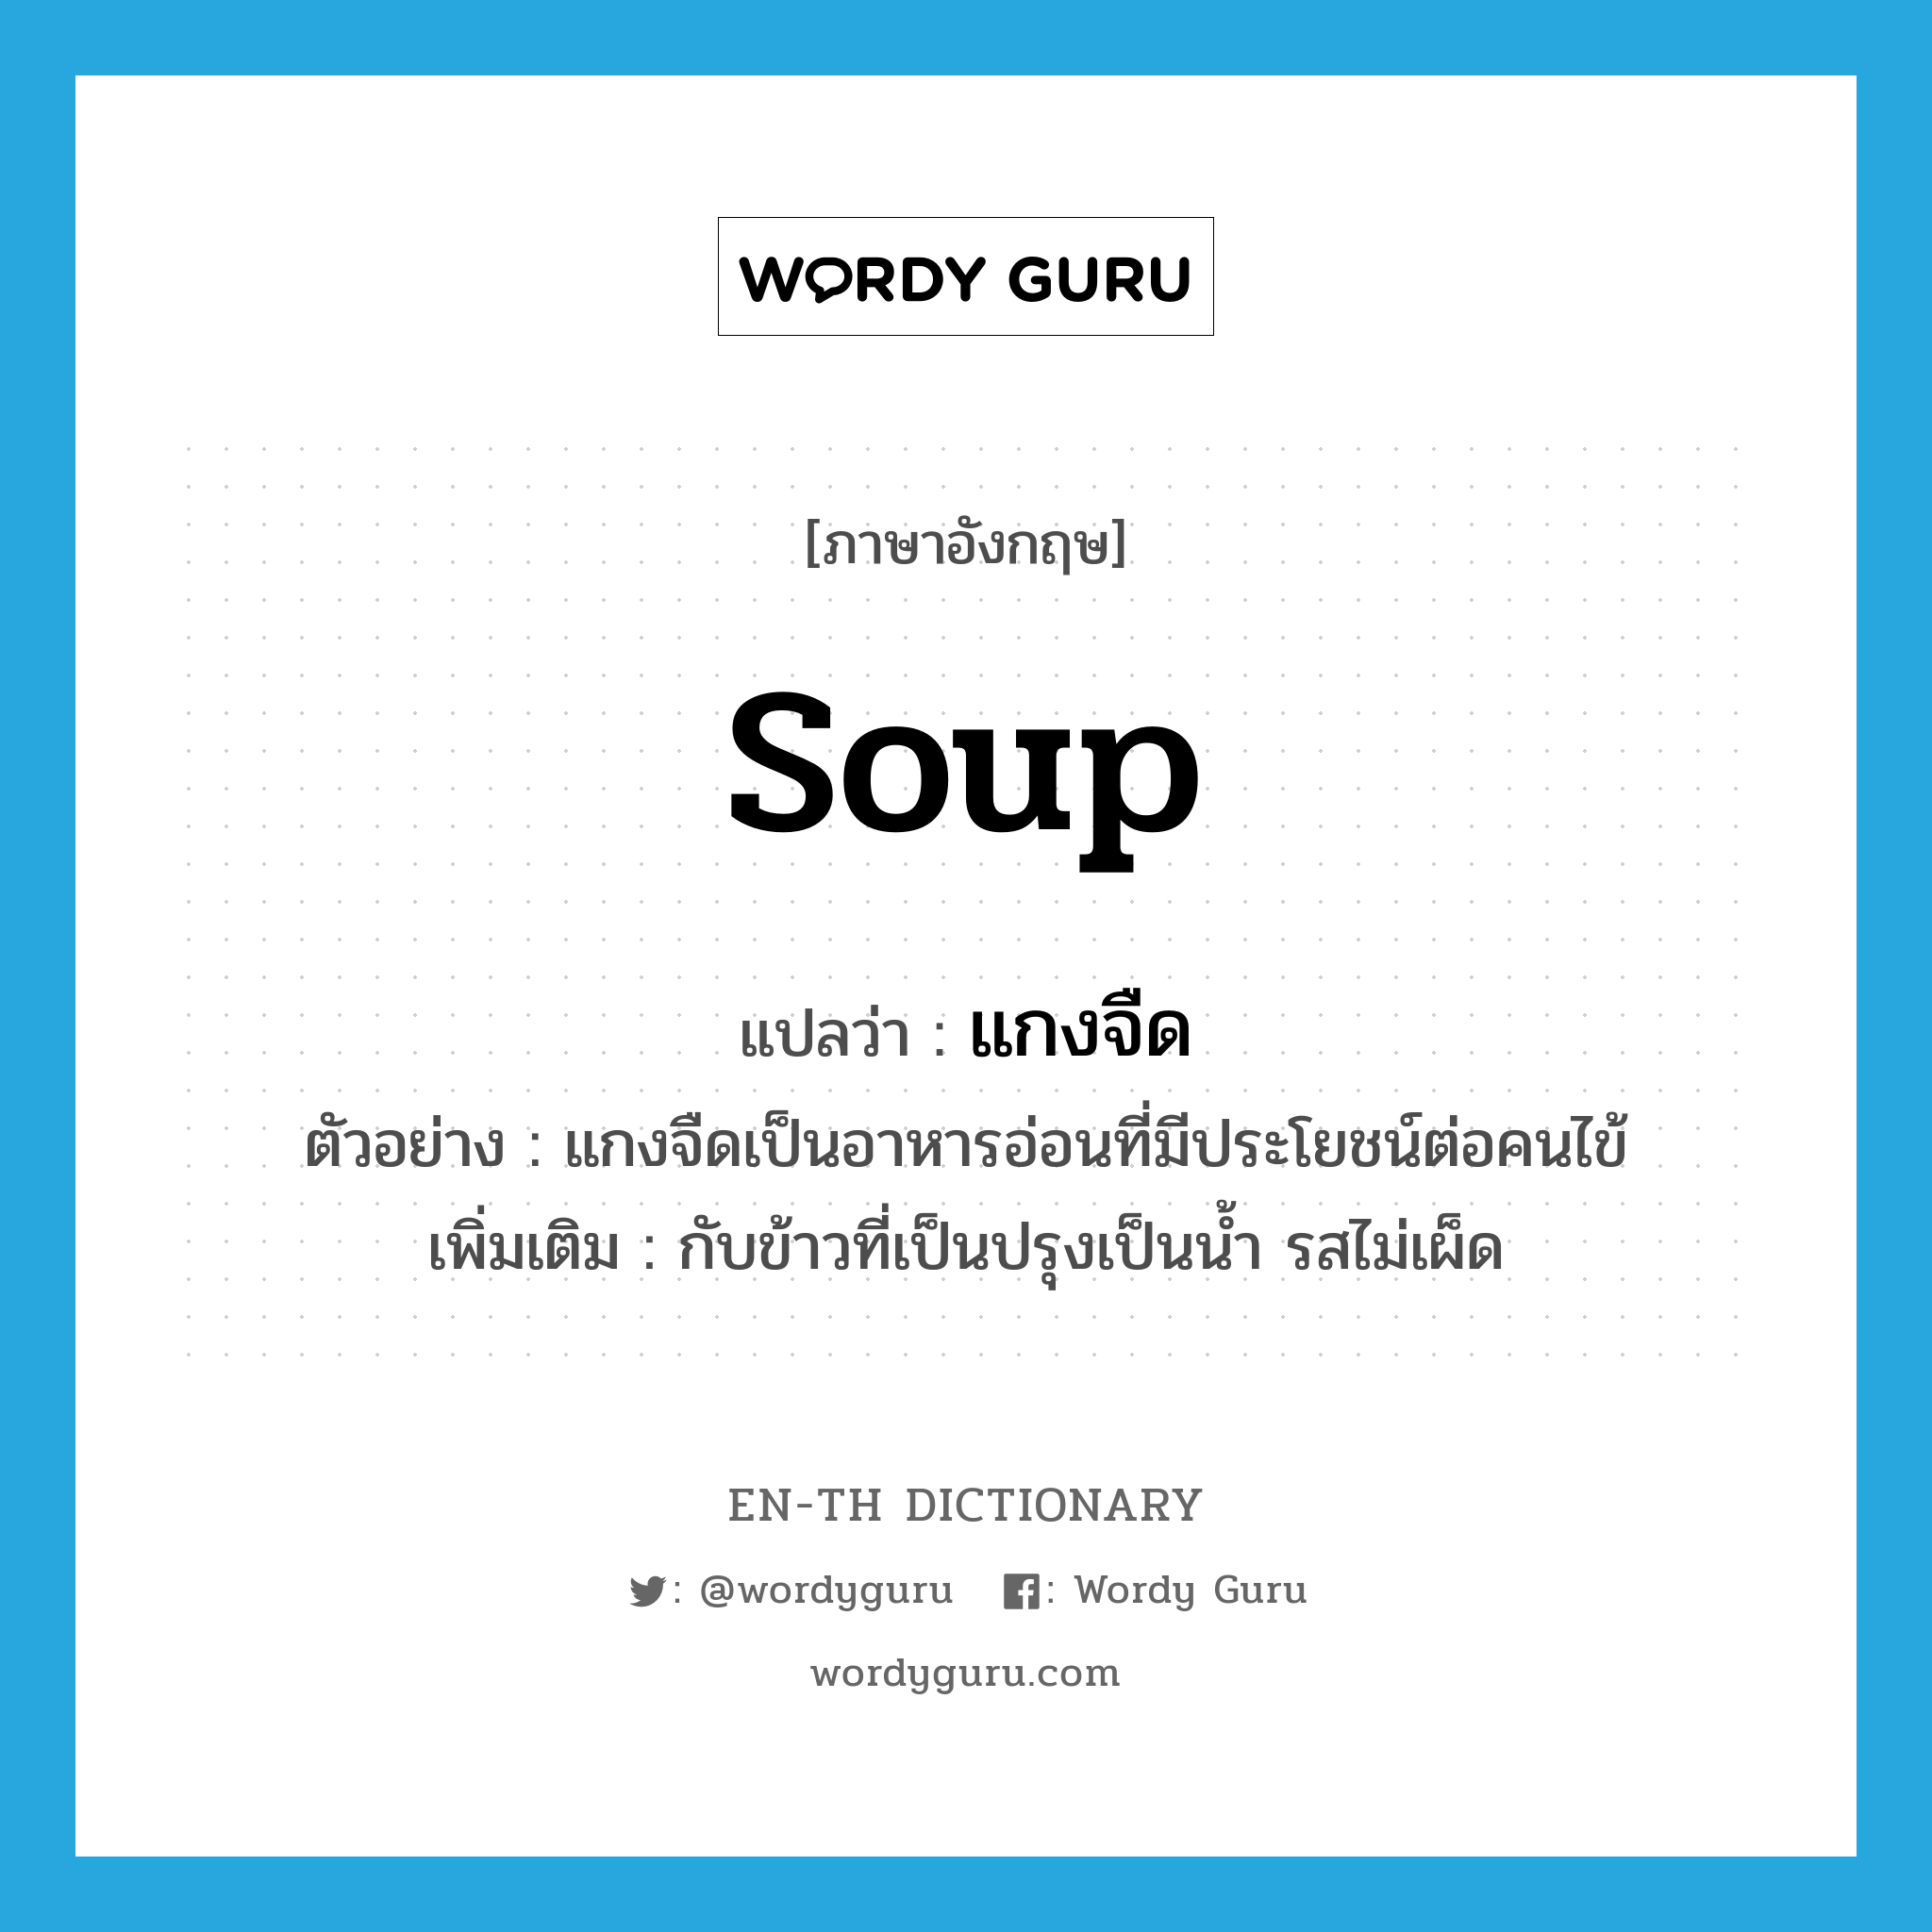 soup แปลว่า?, คำศัพท์ภาษาอังกฤษ soup แปลว่า แกงจืด ประเภท N ตัวอย่าง แกงจืดเป็นอาหารอ่อนที่มีประโยชน์ต่อคนไข้ เพิ่มเติม กับข้าวที่เป็นปรุงเป็นน้ำ รสไม่เผ็ด หมวด N